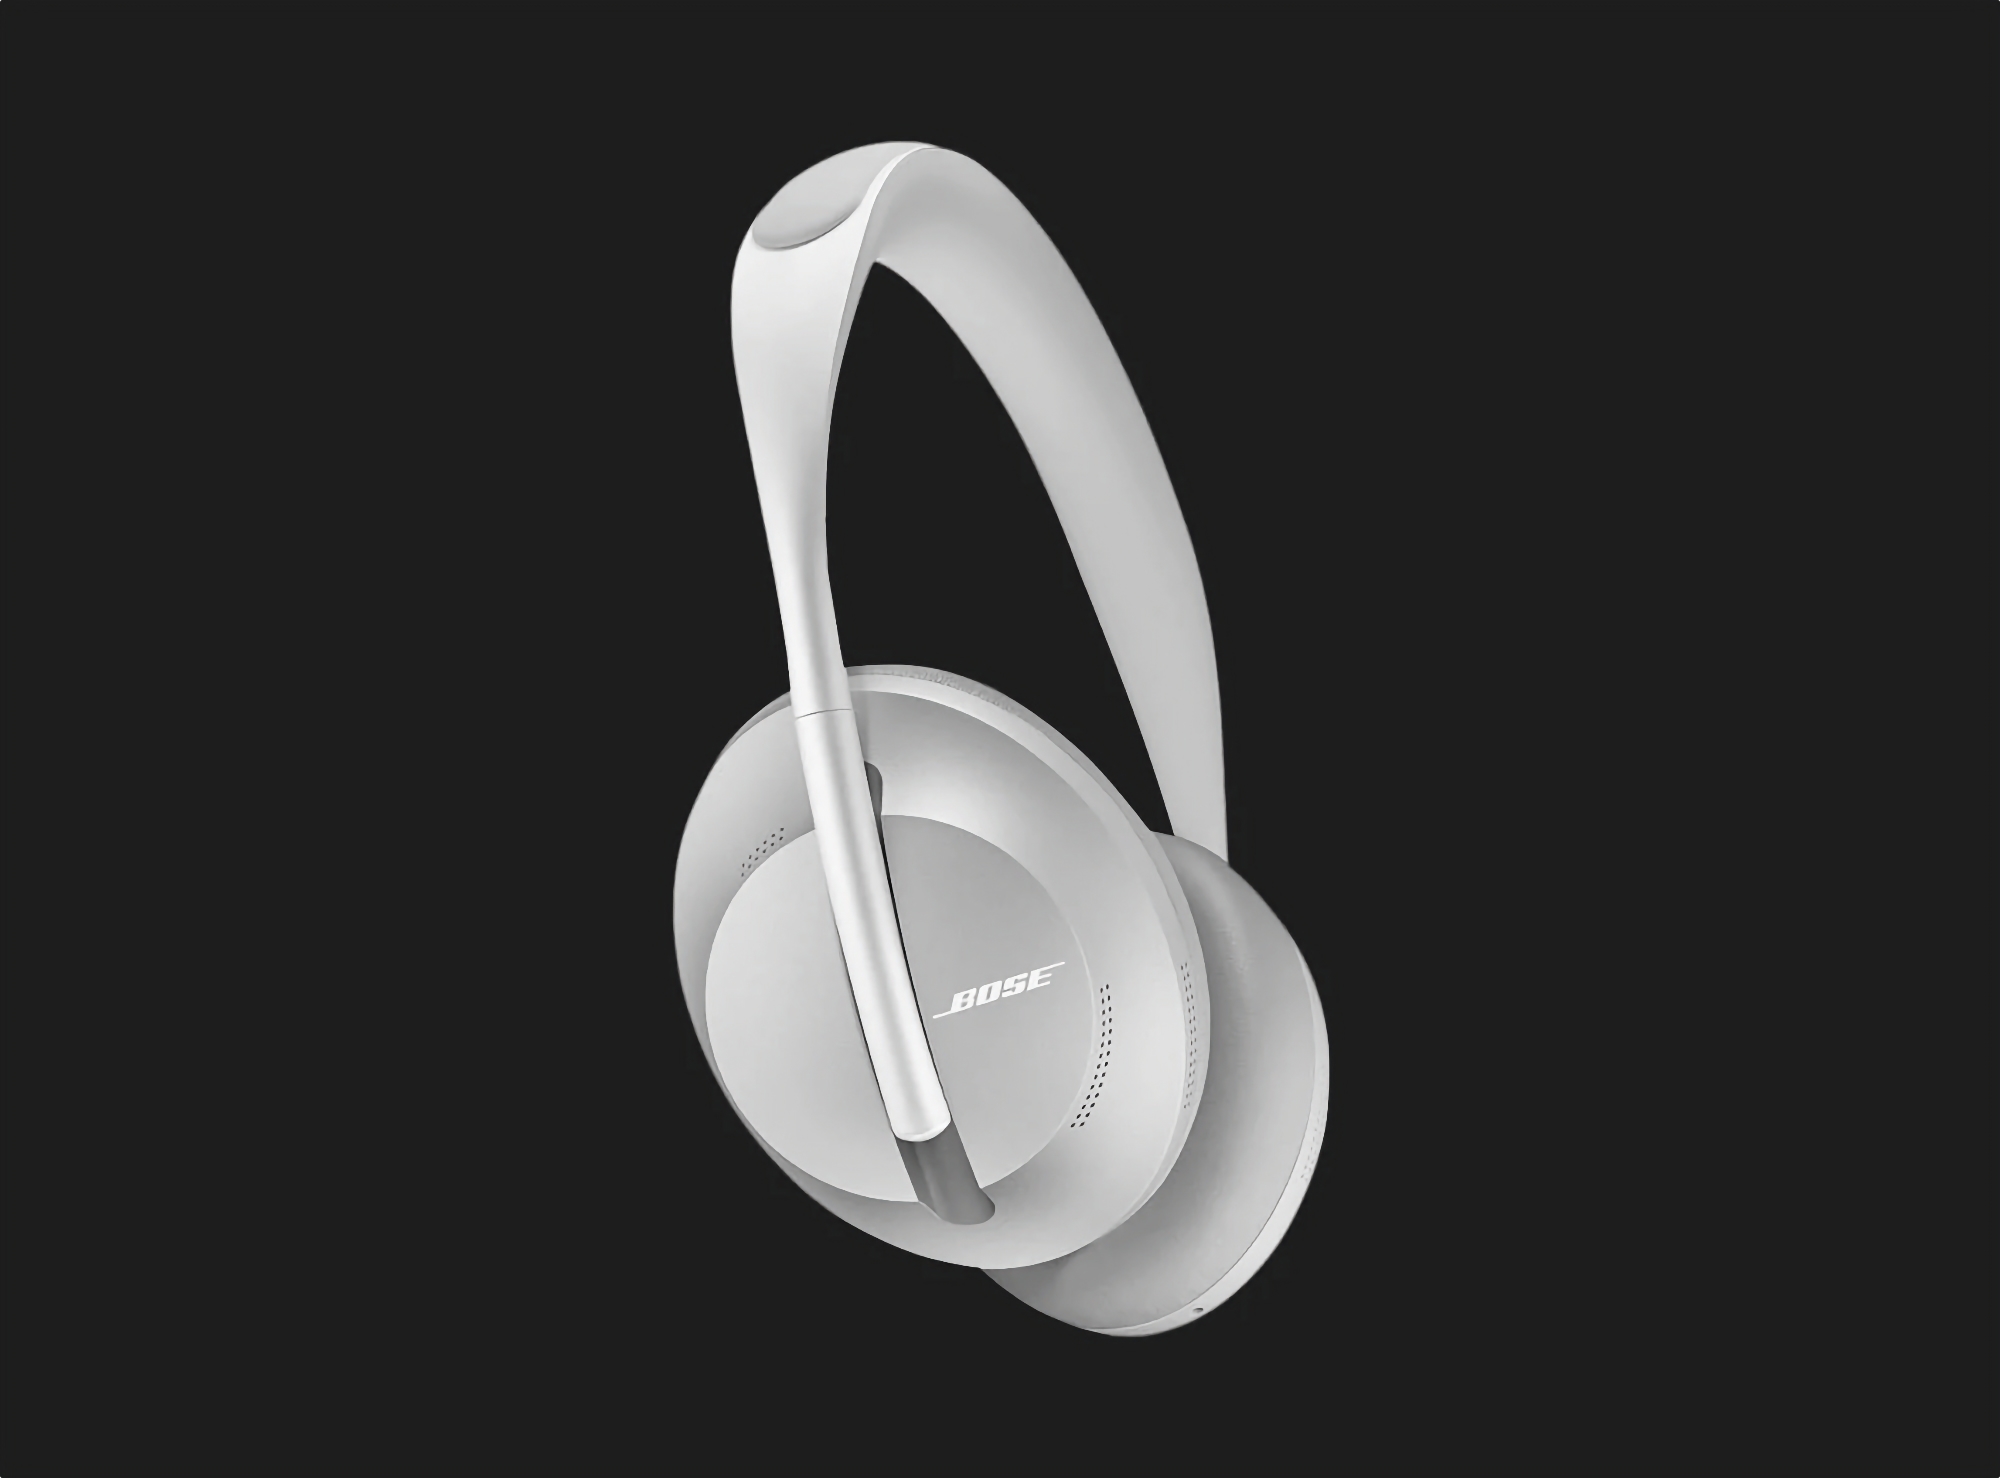 50 dolarów taniej: Bose Noise Cancelling Headphones 700 with ANC dostępne w Amazon w promocyjnej cenie